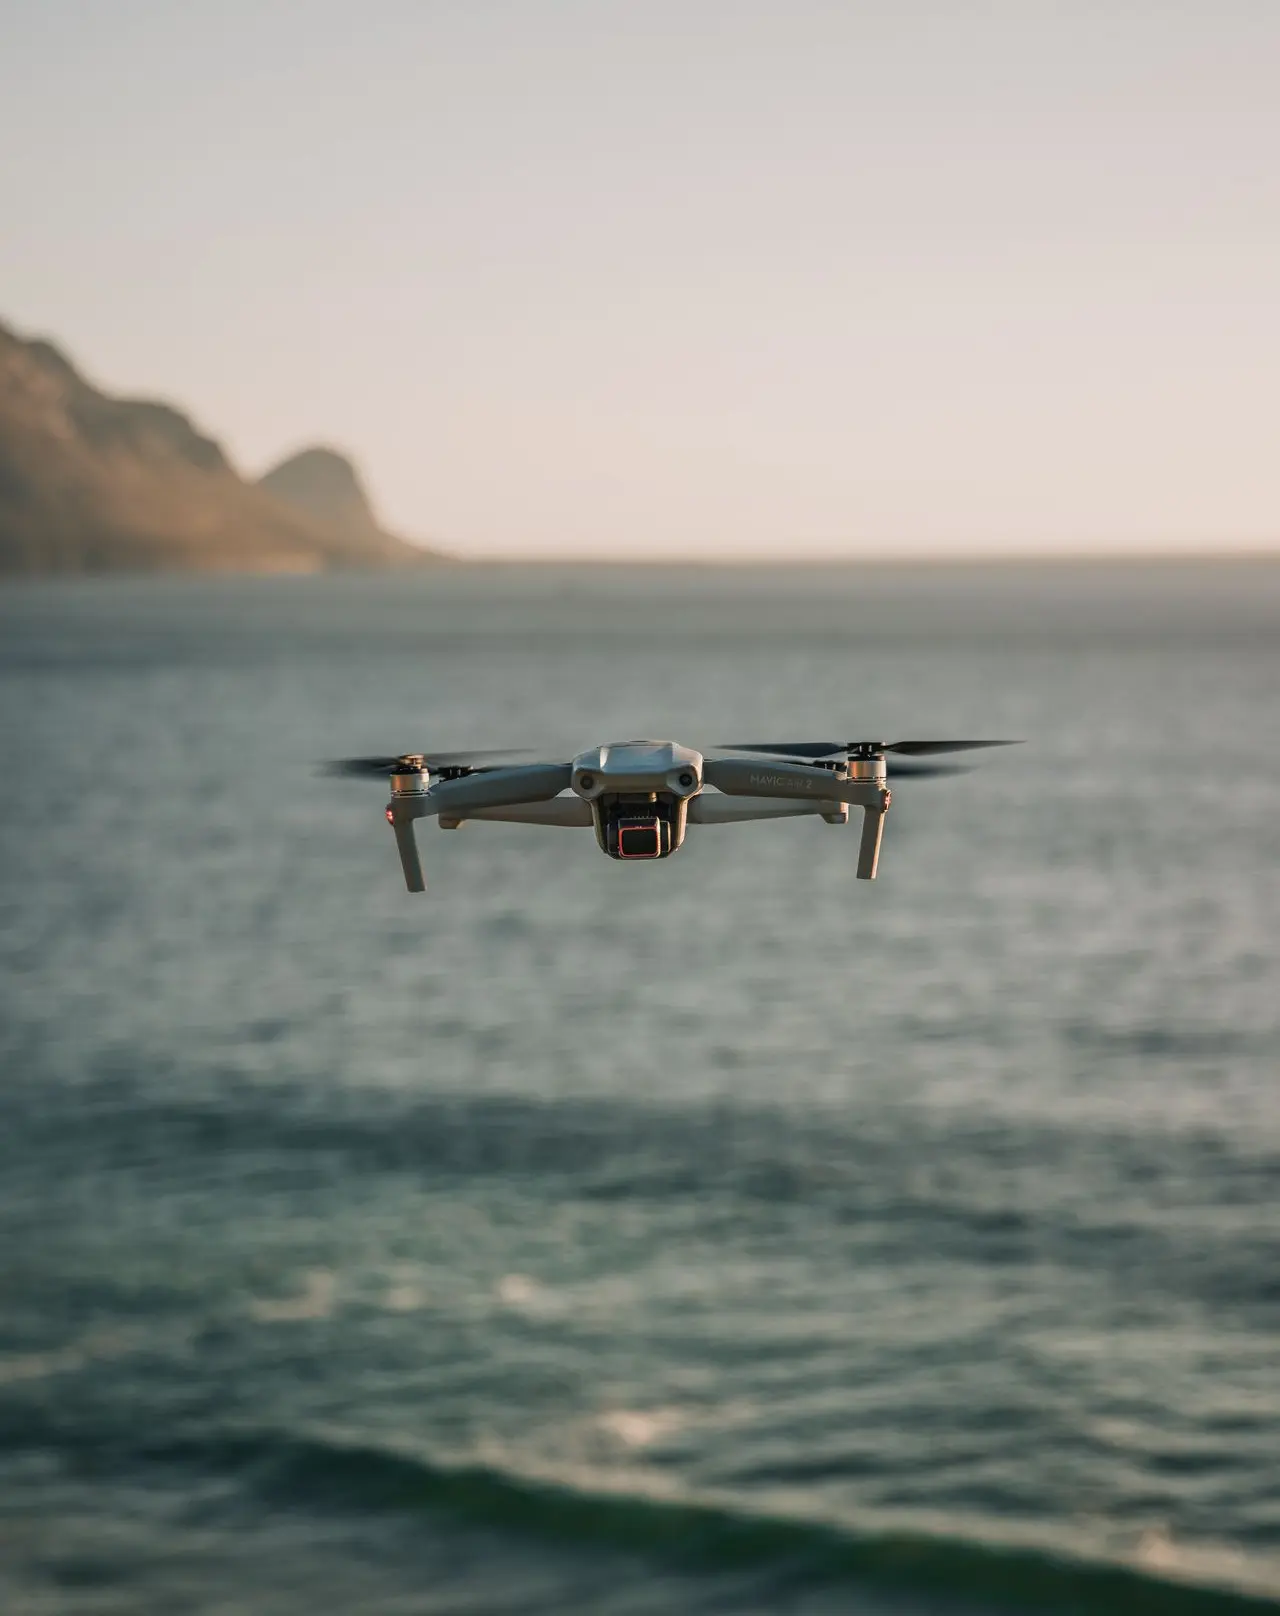 Drone tournage télépilote de drone professionnel captation aérienne